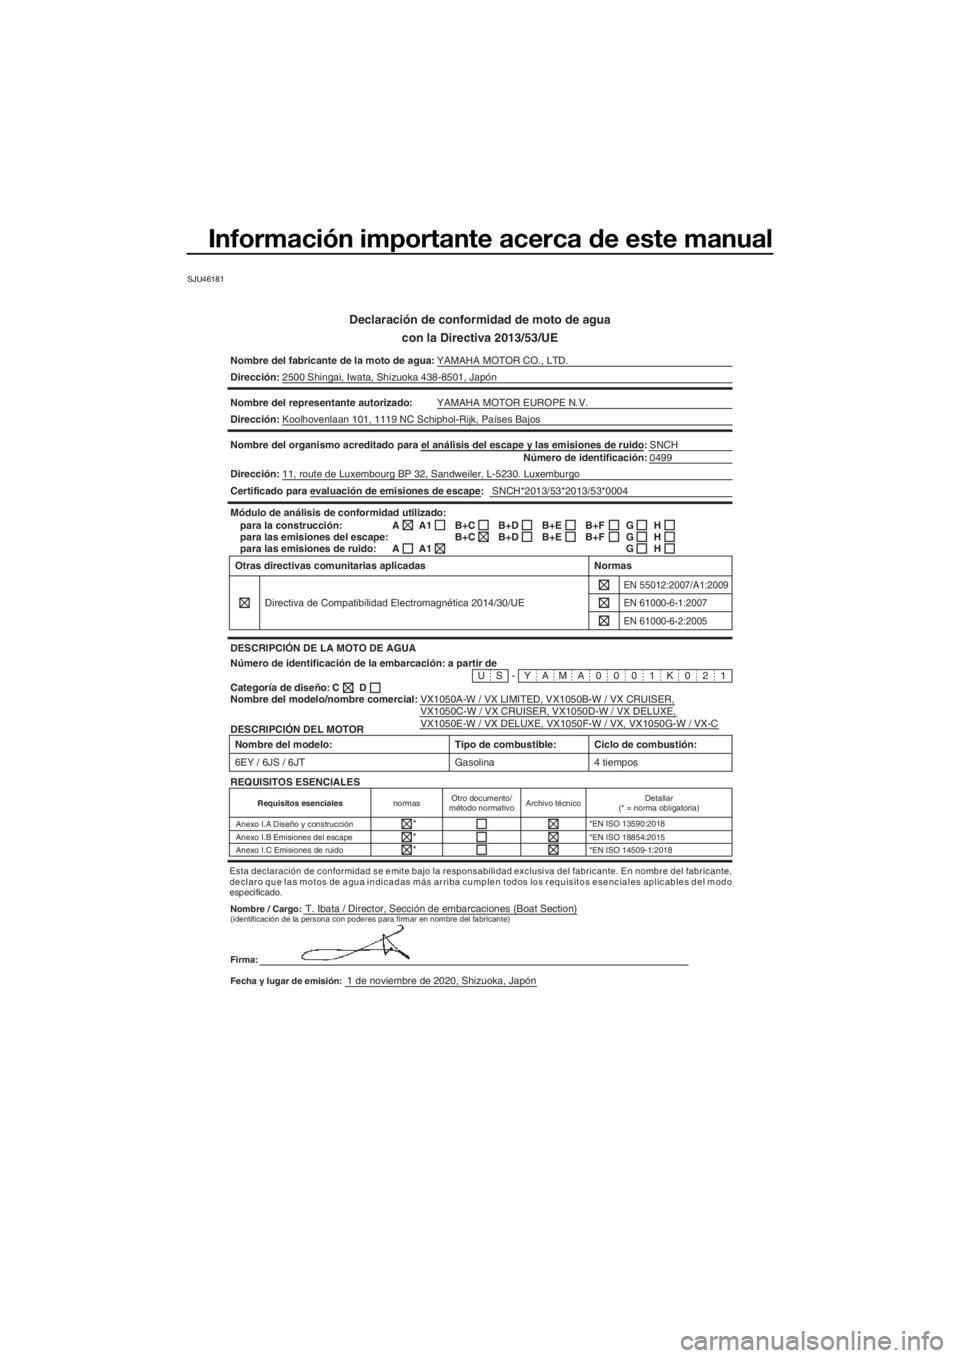 YAMAHA VX CRUISER 2021  Manuale de Empleo (in Spanish) Información importante acerca de este manual
SJU46181
Declaración de conformidad de moto de agua
con la Directiva 2013/53/UE
Nombre del fabricante de la moto de a gua:YAMAHA MOTOR CO., LTD.
Direcci�